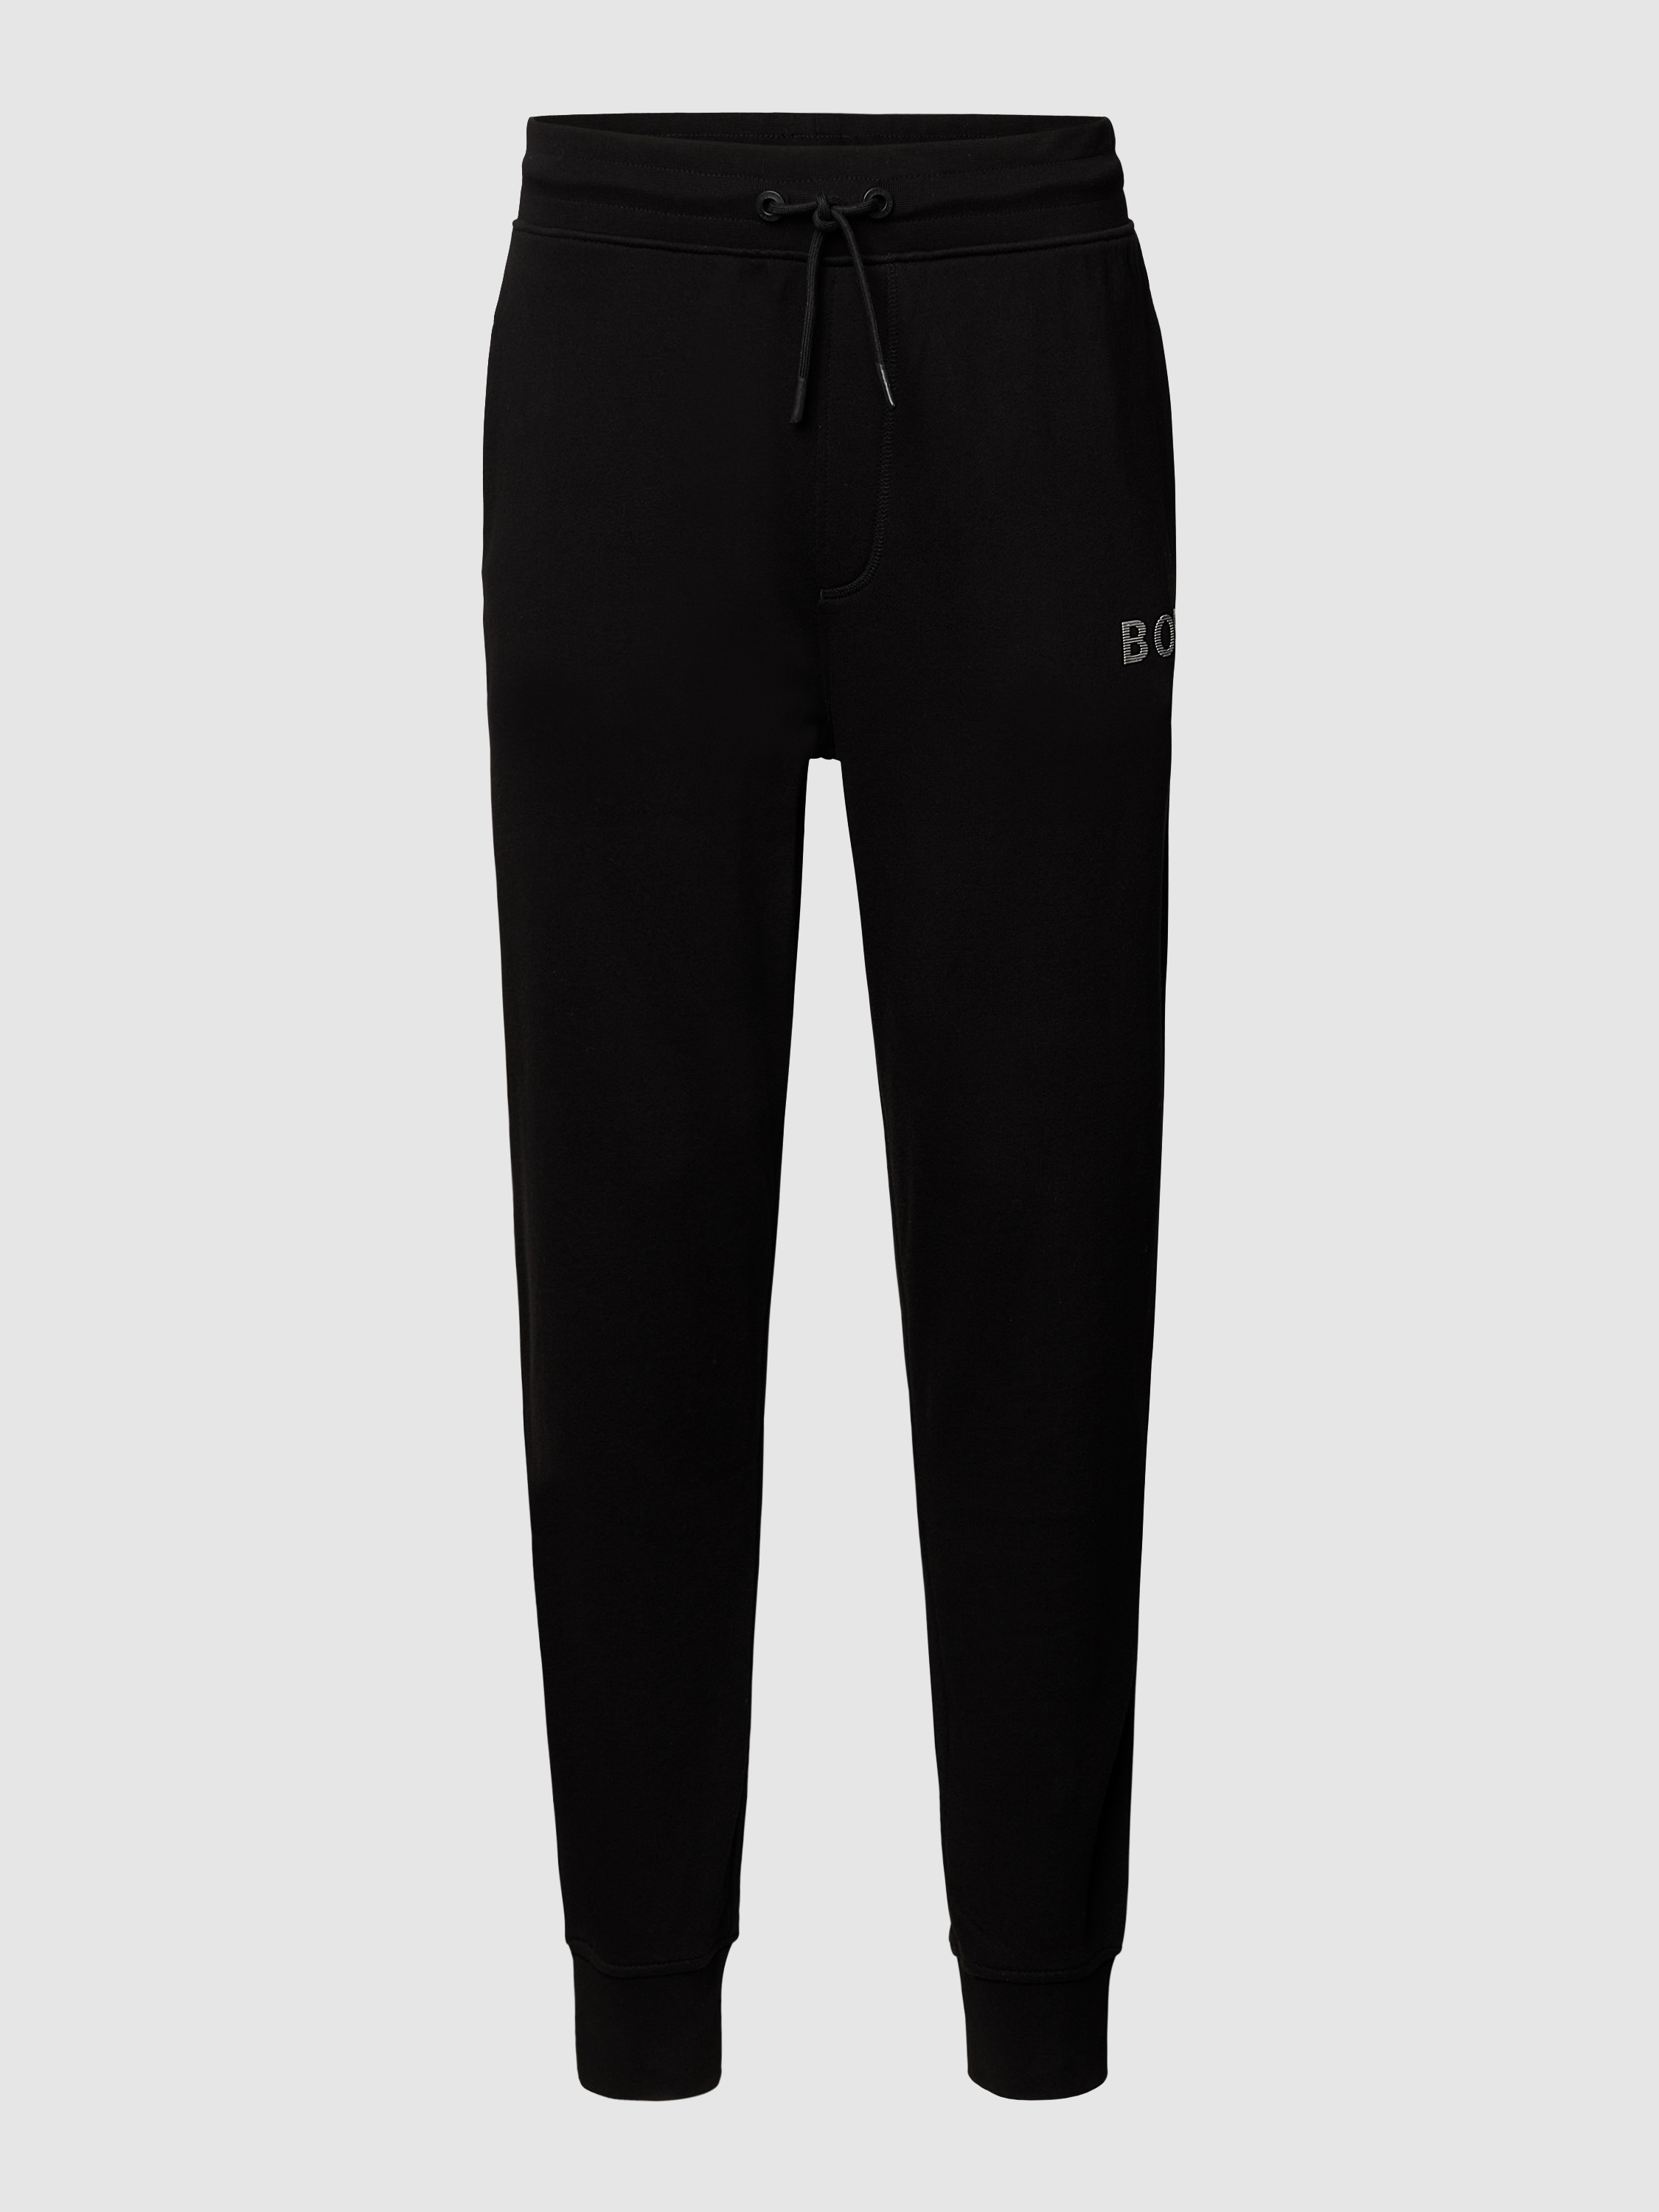 Спортивные брюки мужские Boss Orange 1458765 черные XL (доставка из-за рубежа)